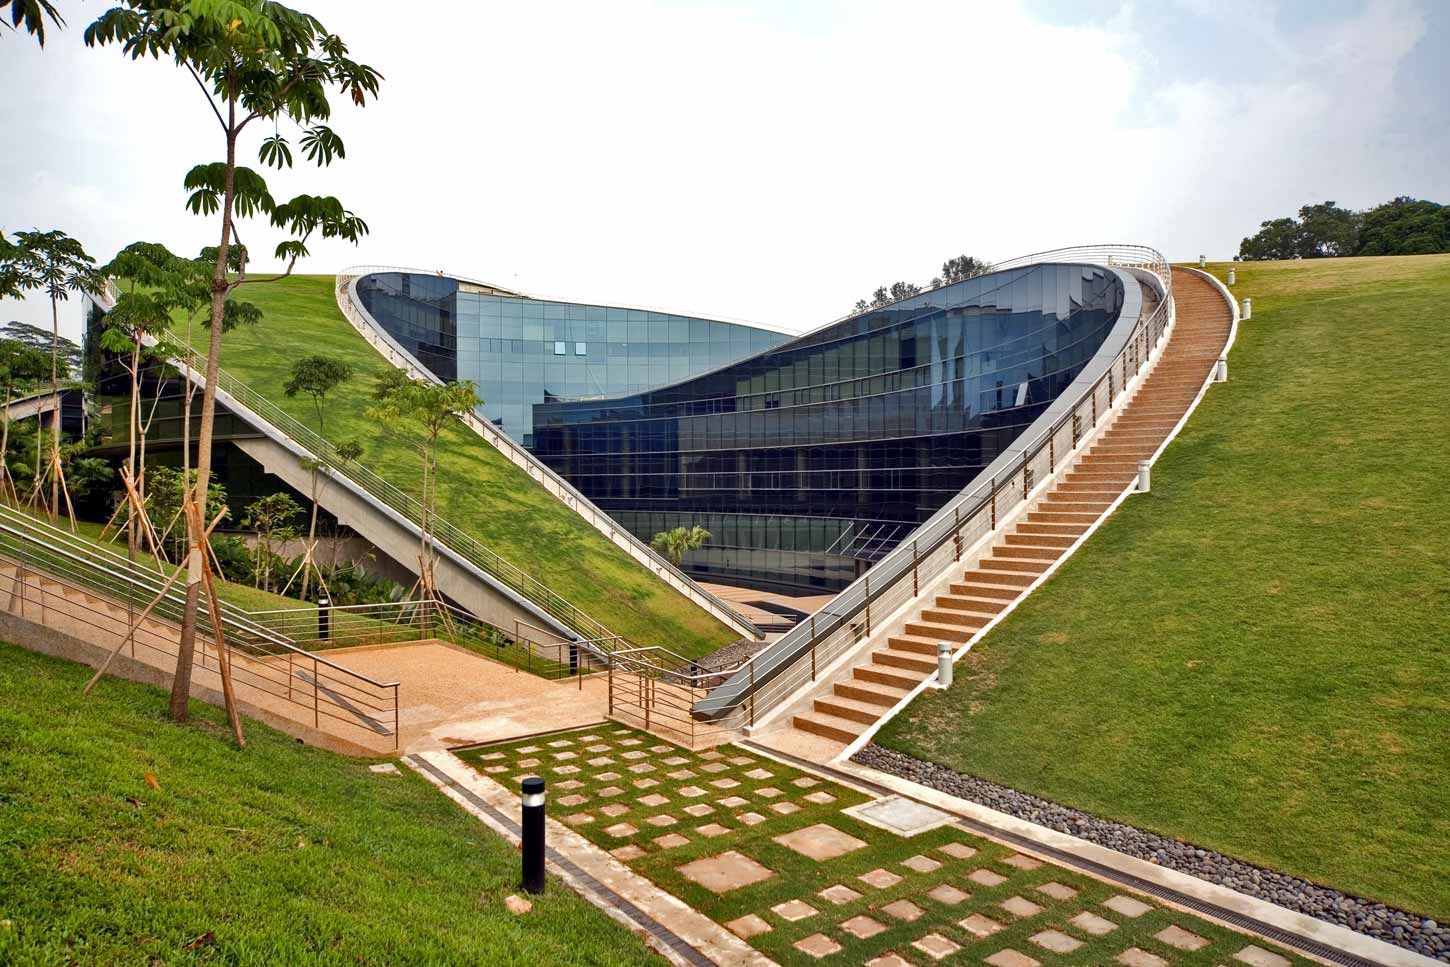 Đại học Công nghệ Nanyang là một trong những ngôi trường Đại học danh tiếng bậc nhất Singapore với chất lượng đào tạo trong các ngành nghề về khoa học kĩ thuật, công nghệ được đánh giá cao không chỉ tại Singapore mà còn ở Châu Á và thế giới